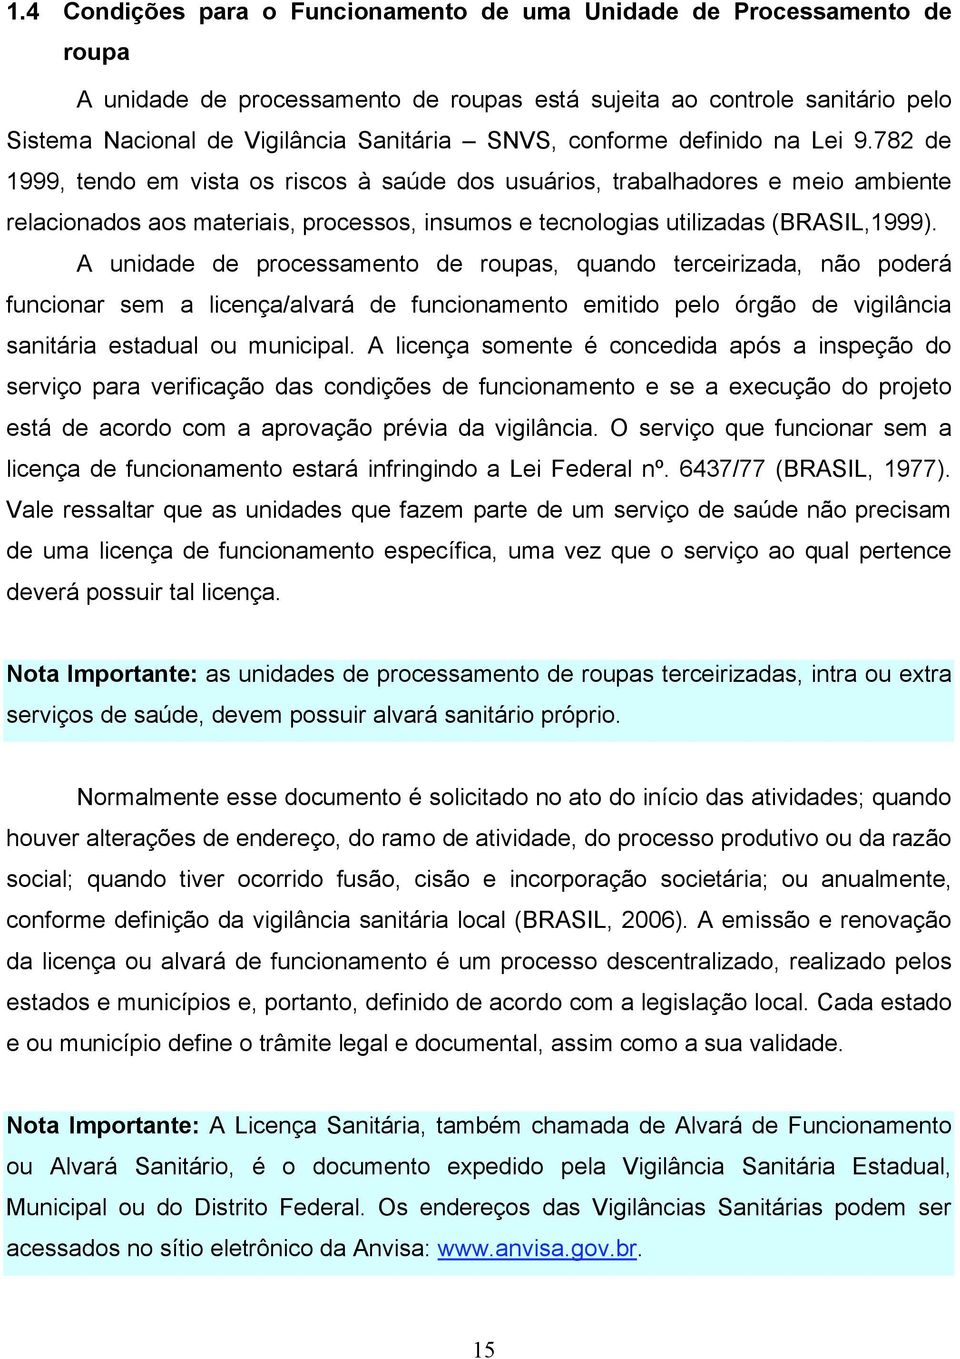 782 de 1999, tendo em vista os riscos à saúde dos usuários, trabalhadores e meio ambiente relacionados aos materiais, processos, insumos e tecnologias utilizadas (BRASIL,1999).